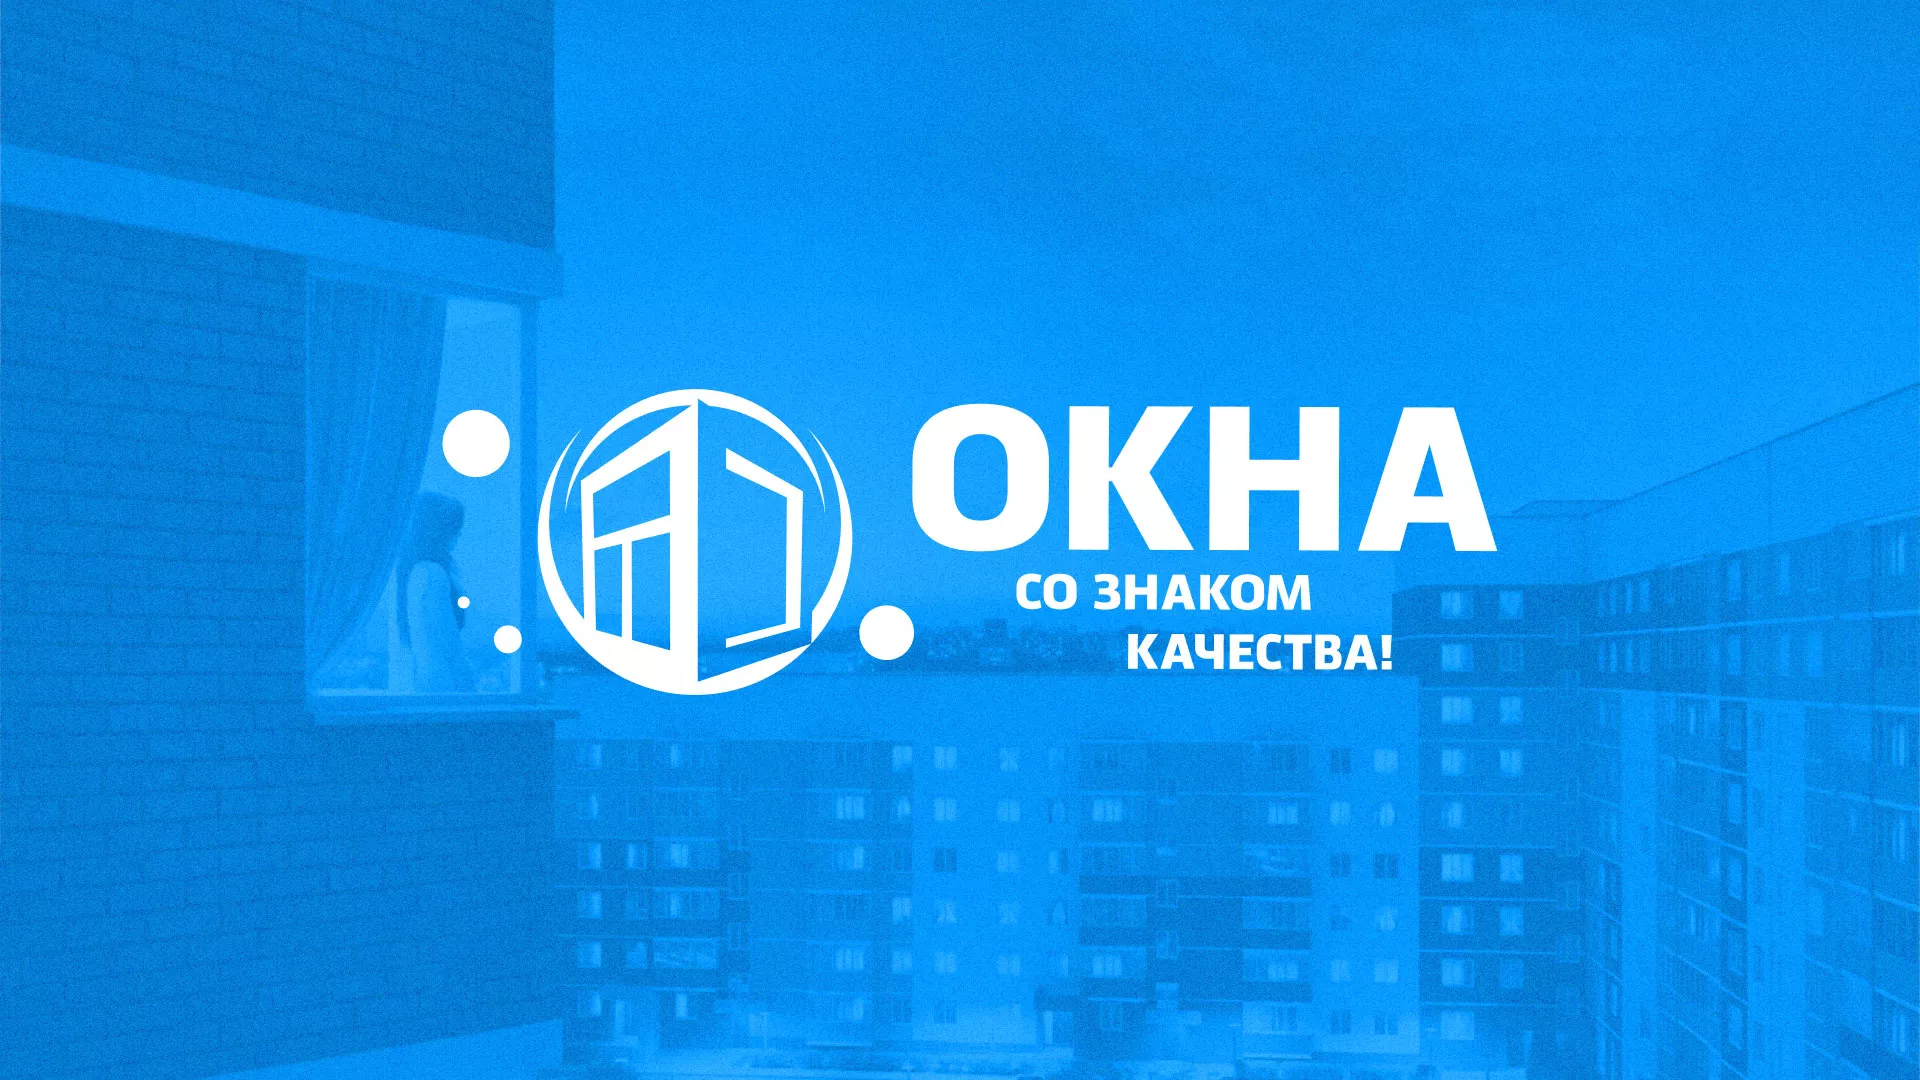 Создание сайта компании «Окна ВИДО» в Орехово-Зуево